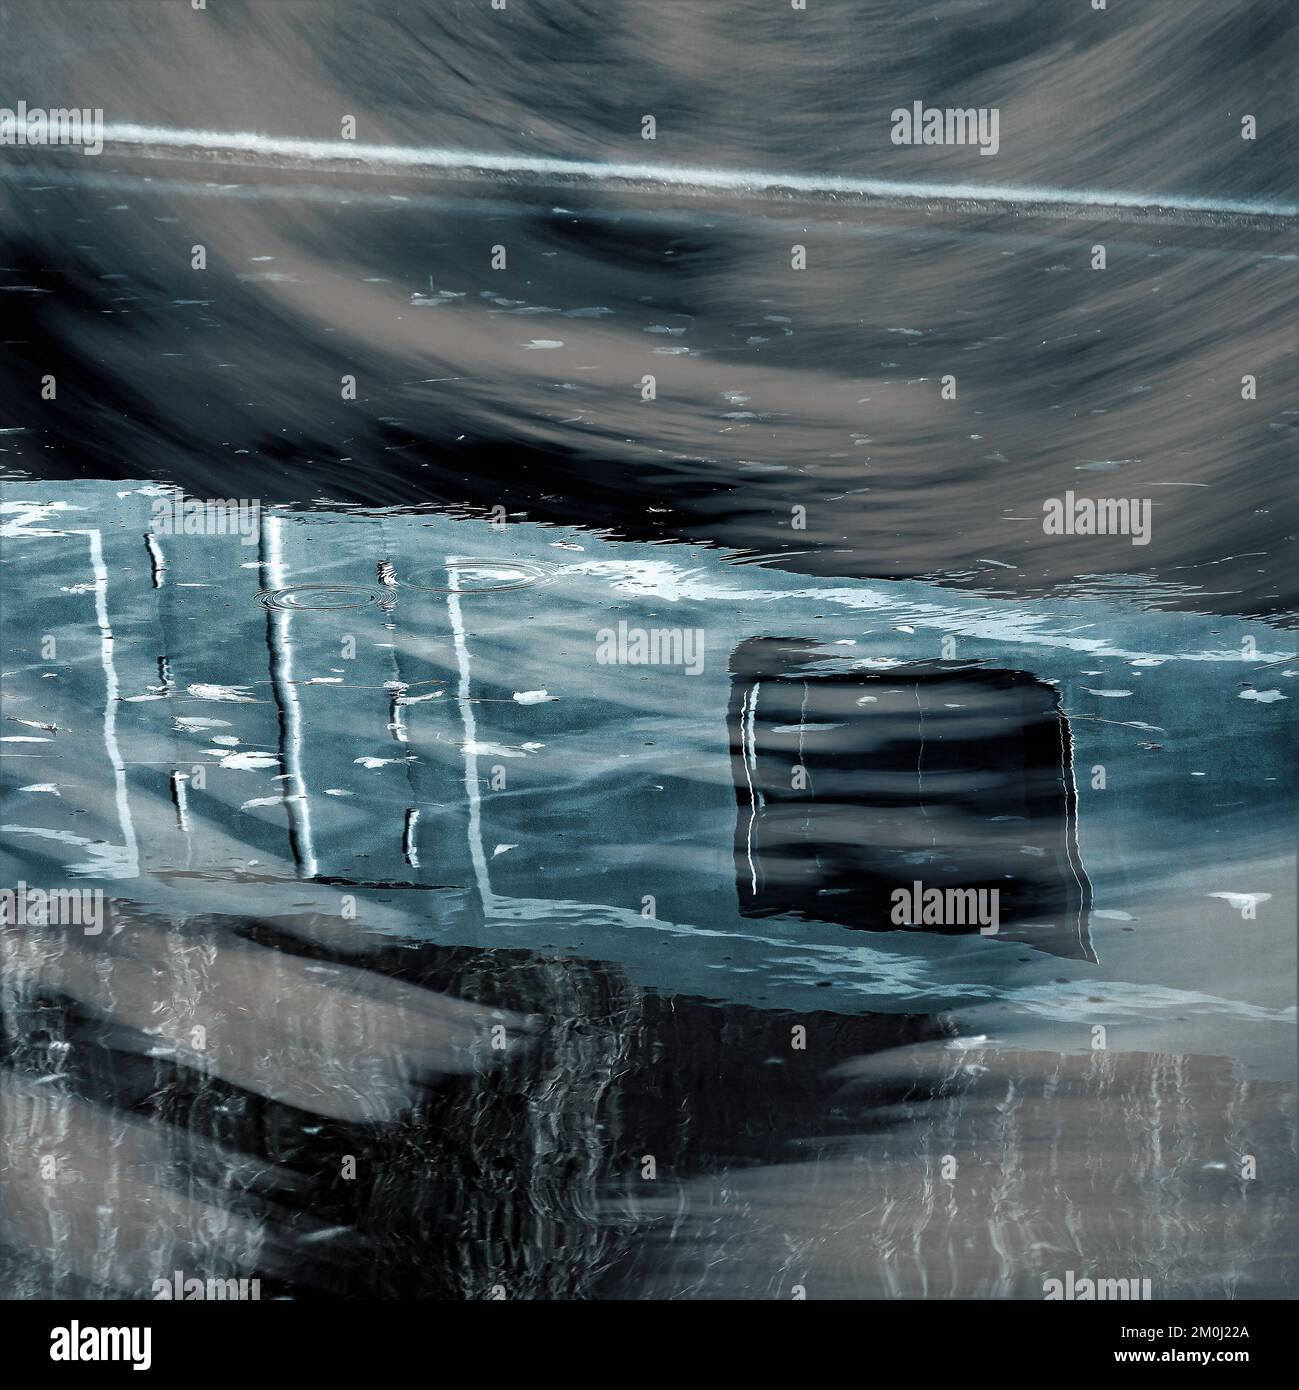 Fotografia astratta, che mostra il motivo riflesso, la linea, la forma, con una tavolozza di colori a infrarossi limitata che mostra le forme di luce specchiate sull'acqua Foto Stock